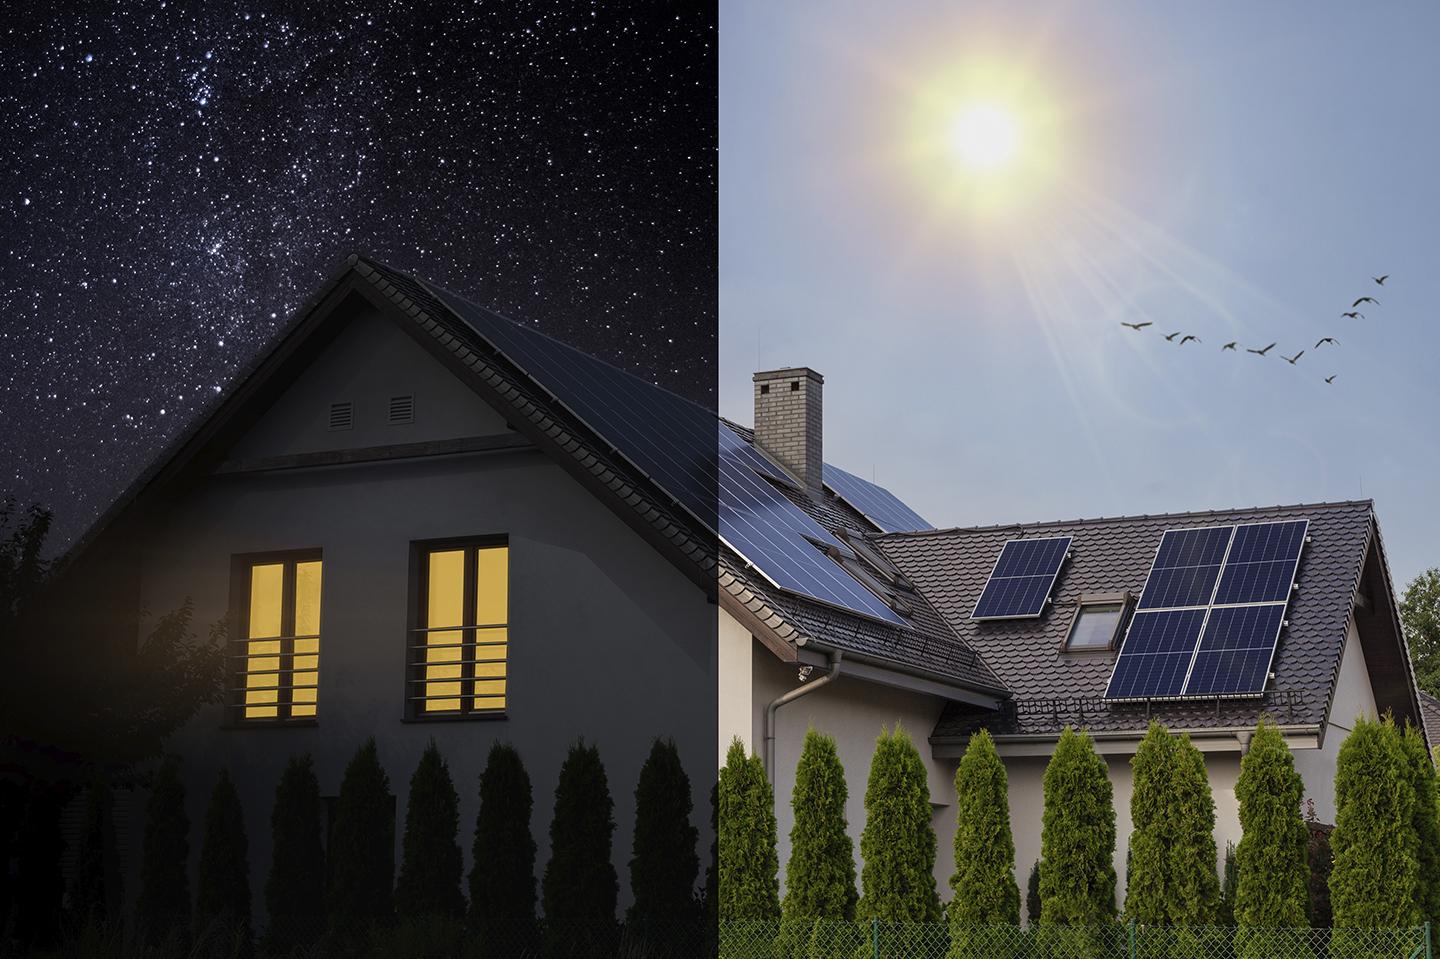 Una de las principales virtudes de la tecnología fotovoltaica es que se adapta a muchos tamaños: desde enormes plantas fotovoltaicas en suelo hasta pequeños paneles para tejados en viviendas.